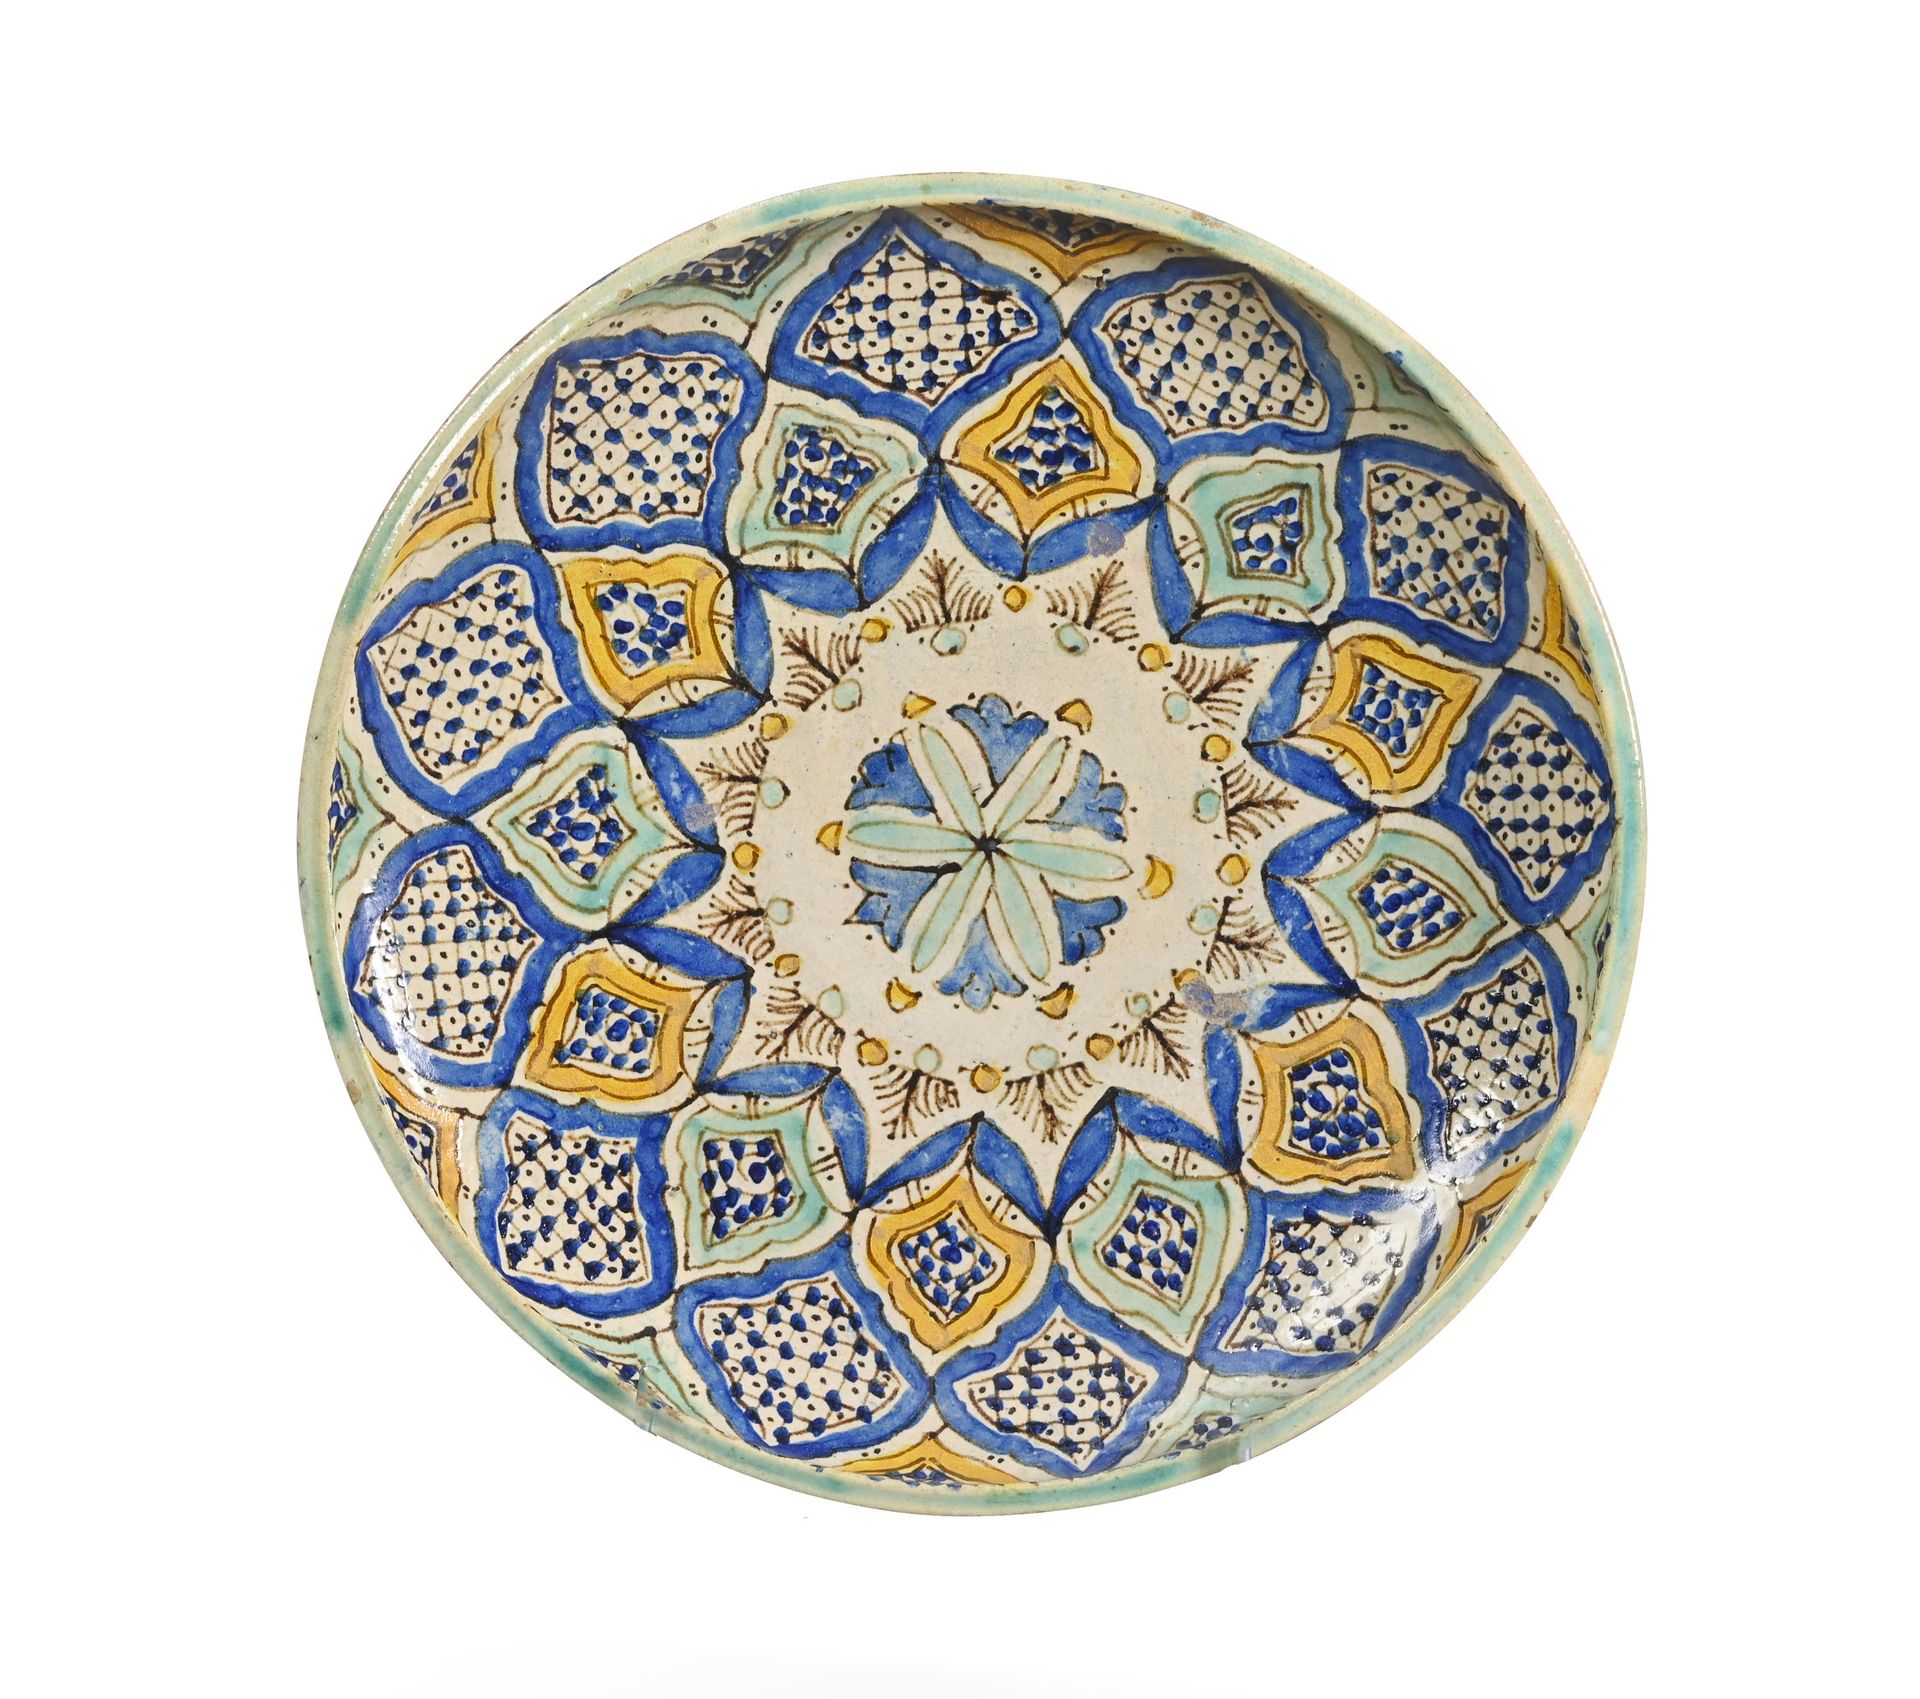 TUNISIE - XIXe / XXe siècle Posten von sechs tunesischen Keramiken

Keramik mit &hellip;